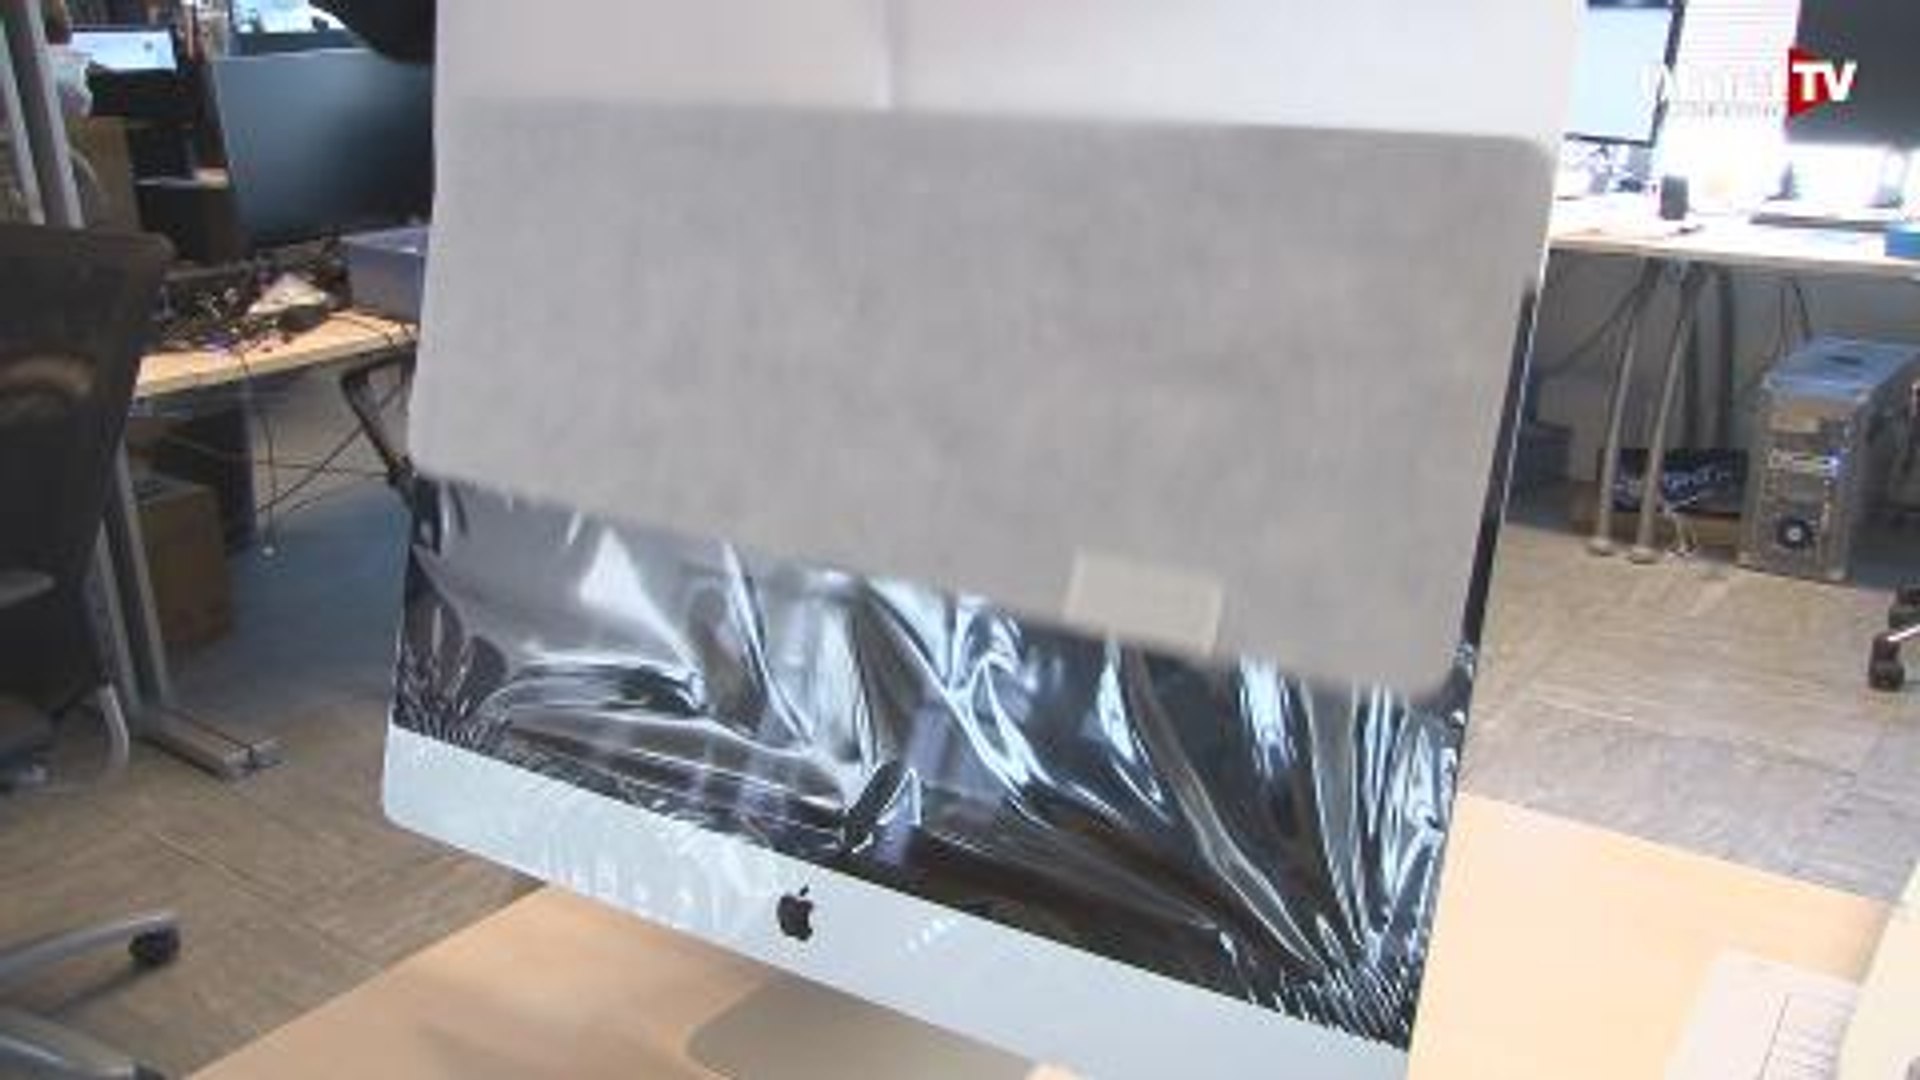 Déballage de l'iMac 27 pouces 5K - Vidéo Dailymotion